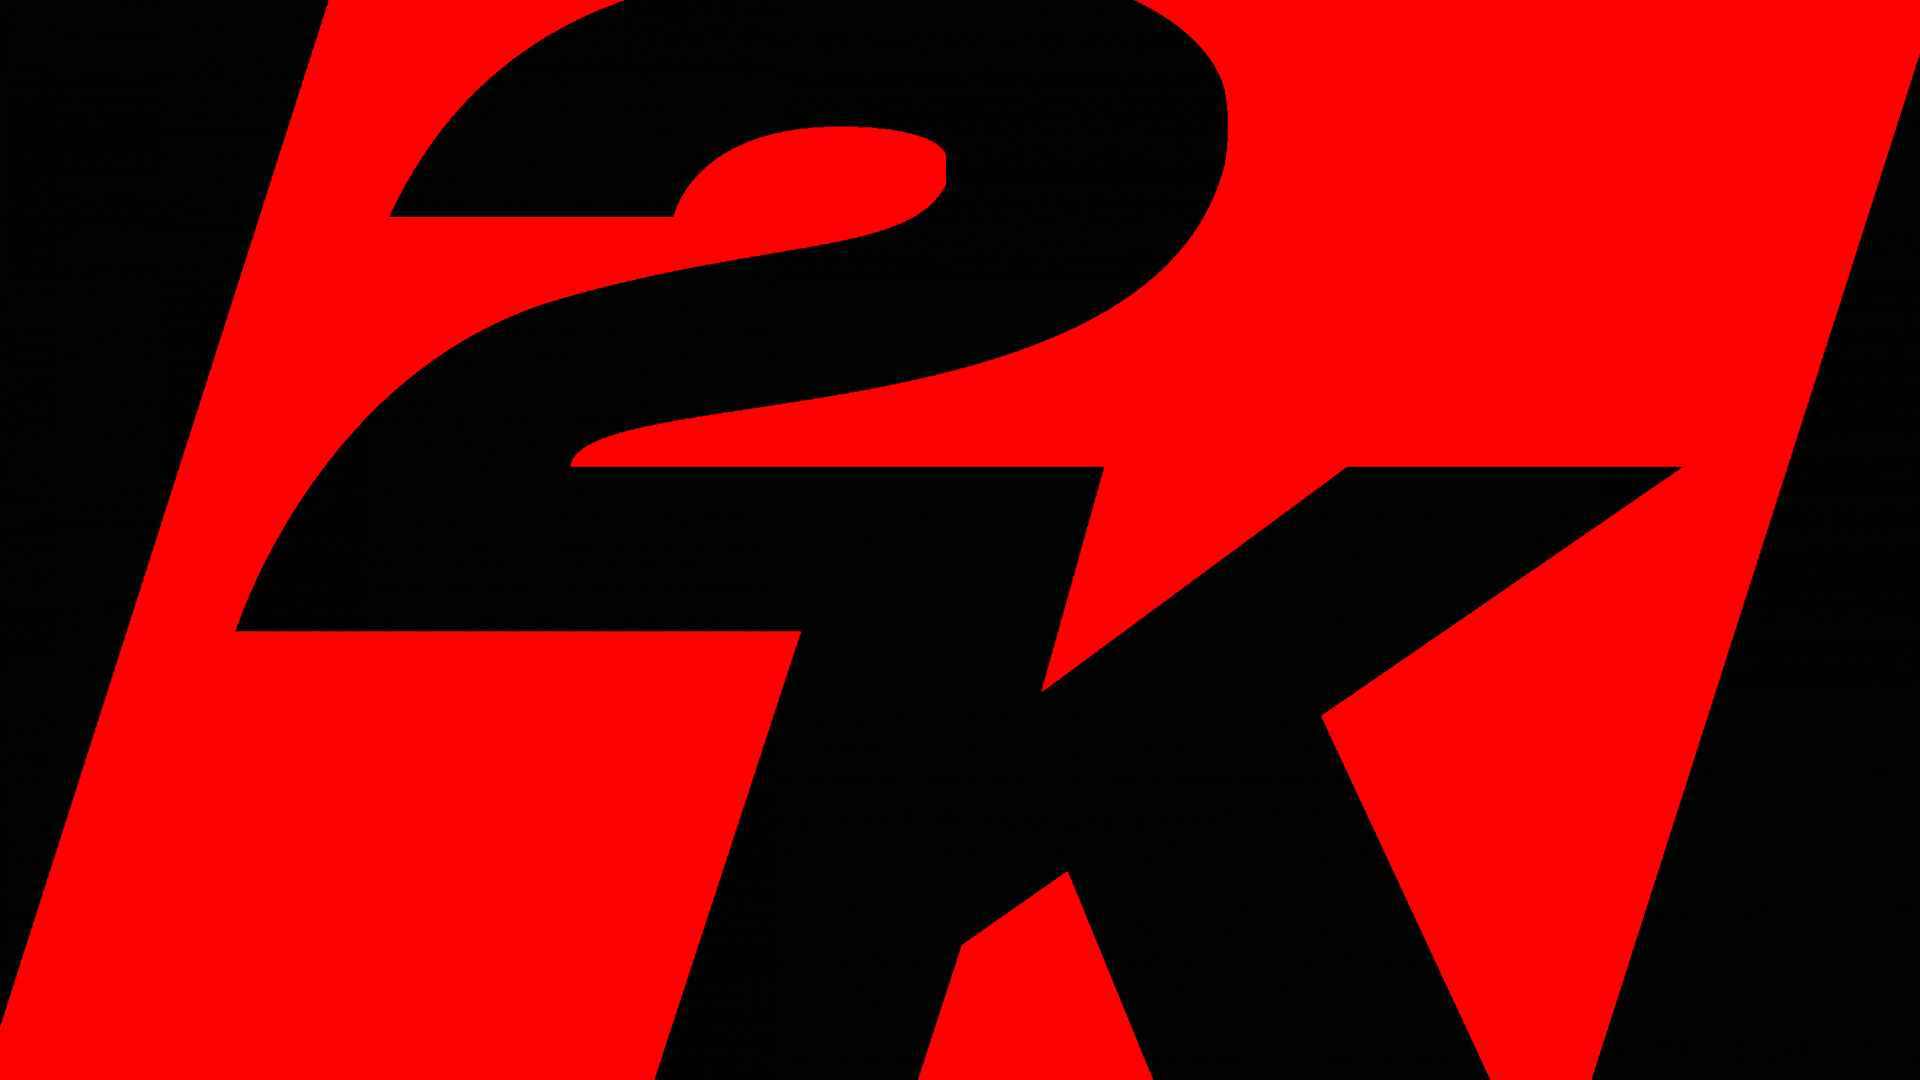 Um rumor postado no Reddit pode ter revelado os futuros jogos da 2K Games, apesar de ser um rumor, tudo isto parece ser muito credível.